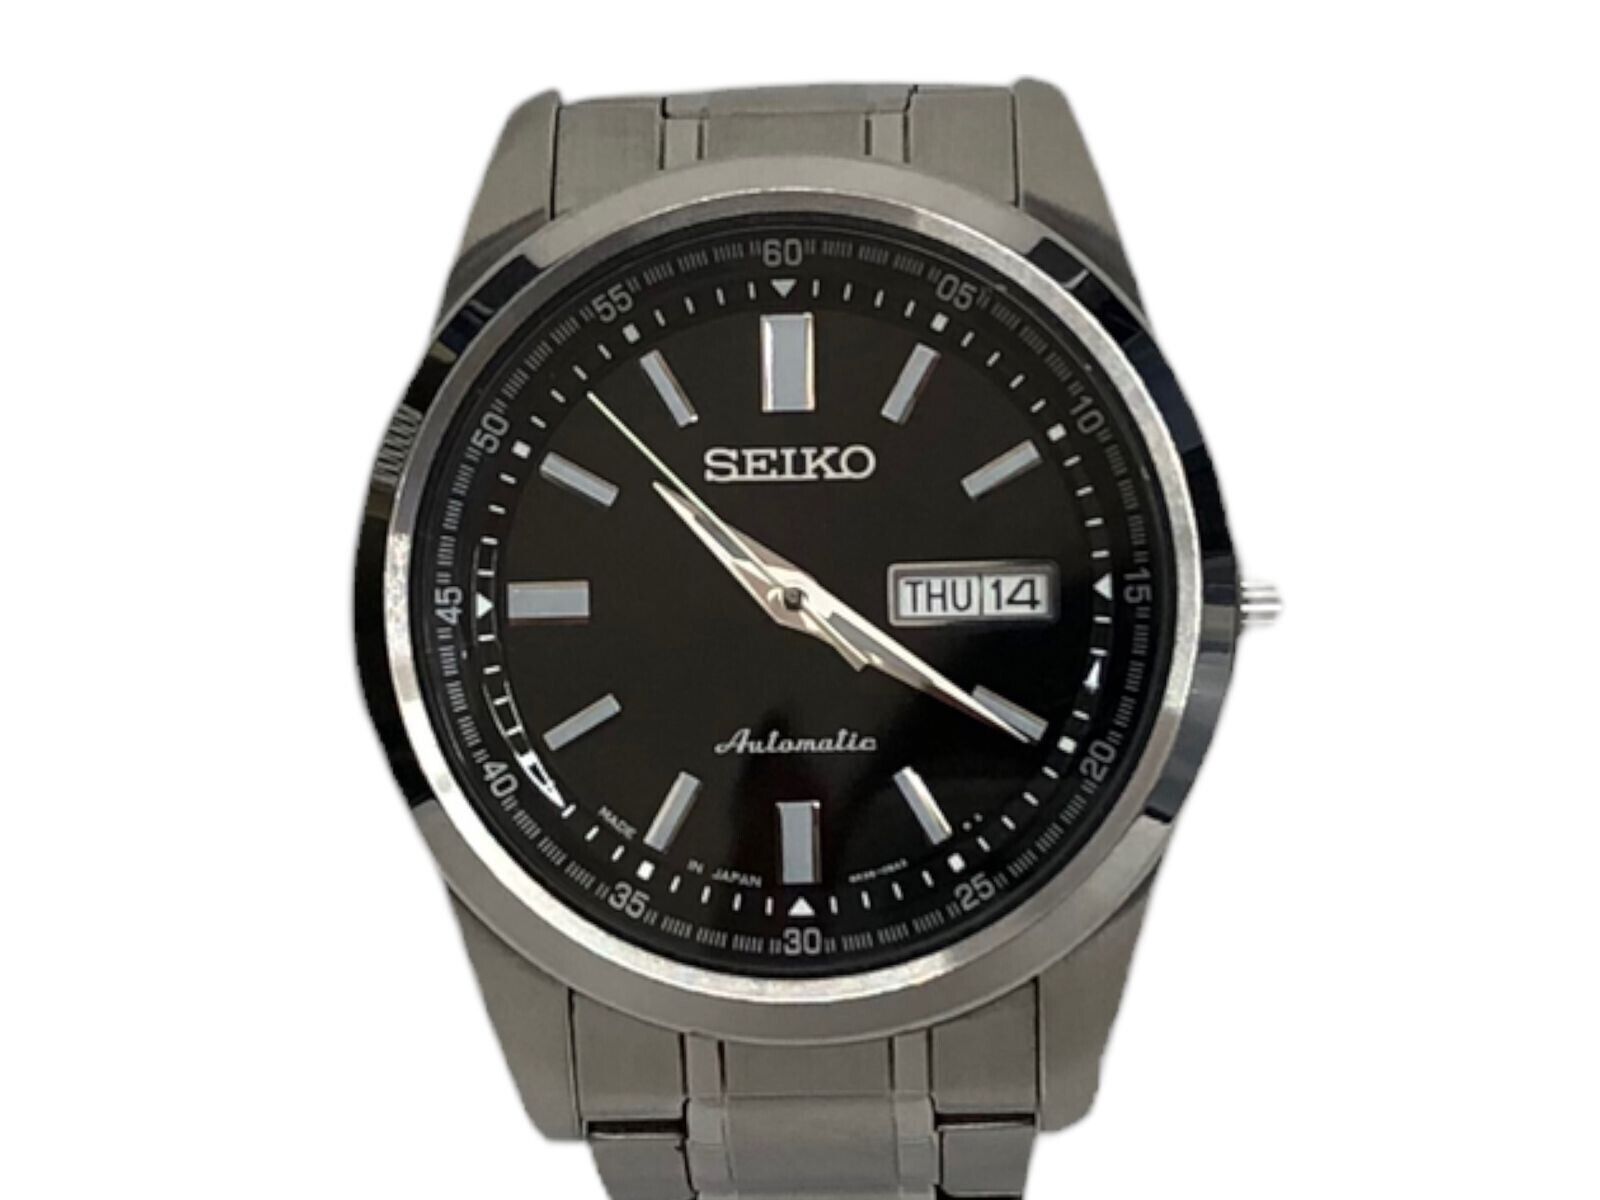 Seiko Men's Black Watch - SARV003 for sale online | eBay